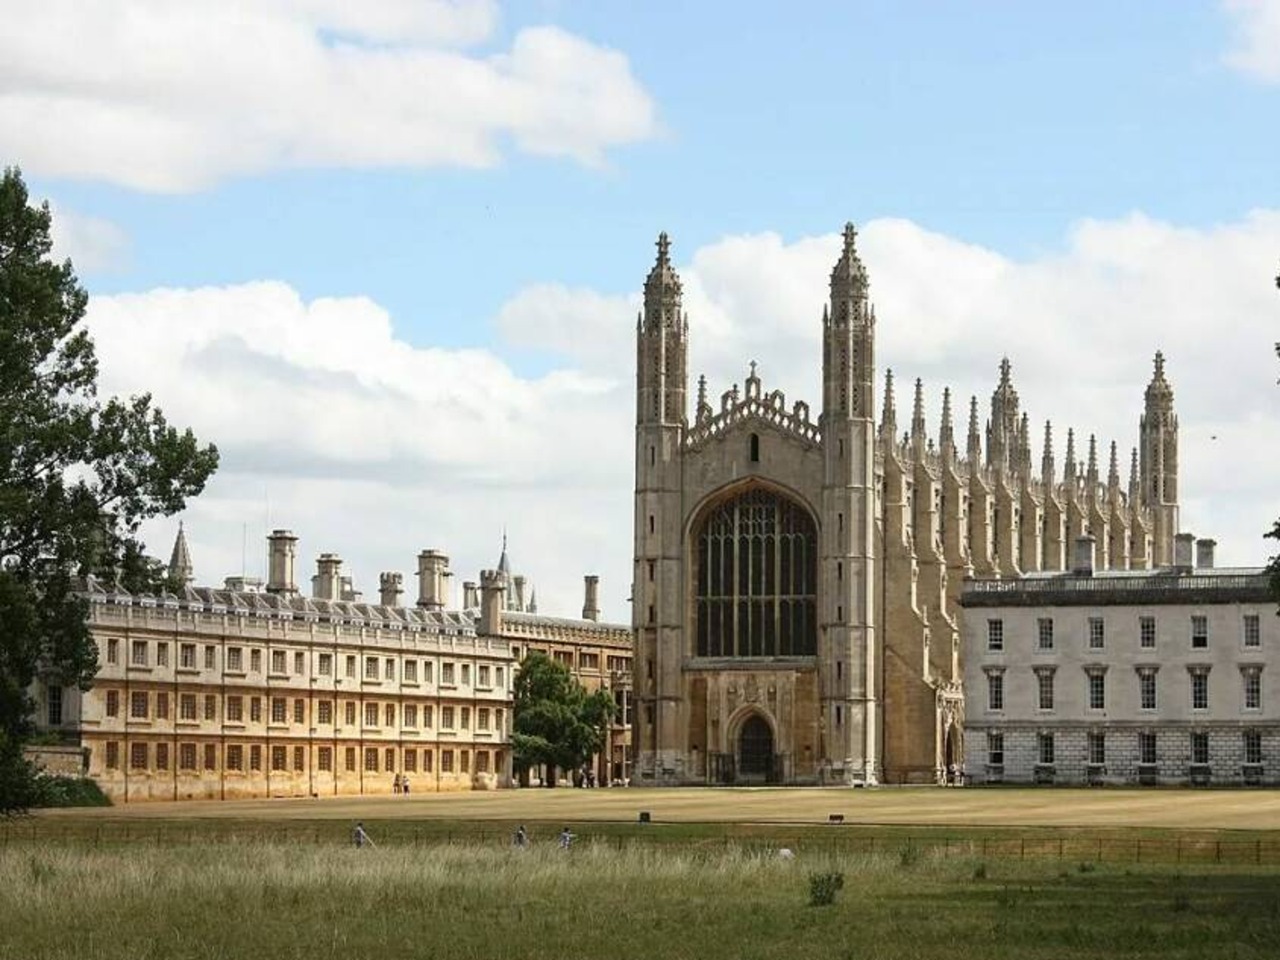 Кембридж — в топе мировых университетов | Цена 195£, отзывы, описание экскурсии